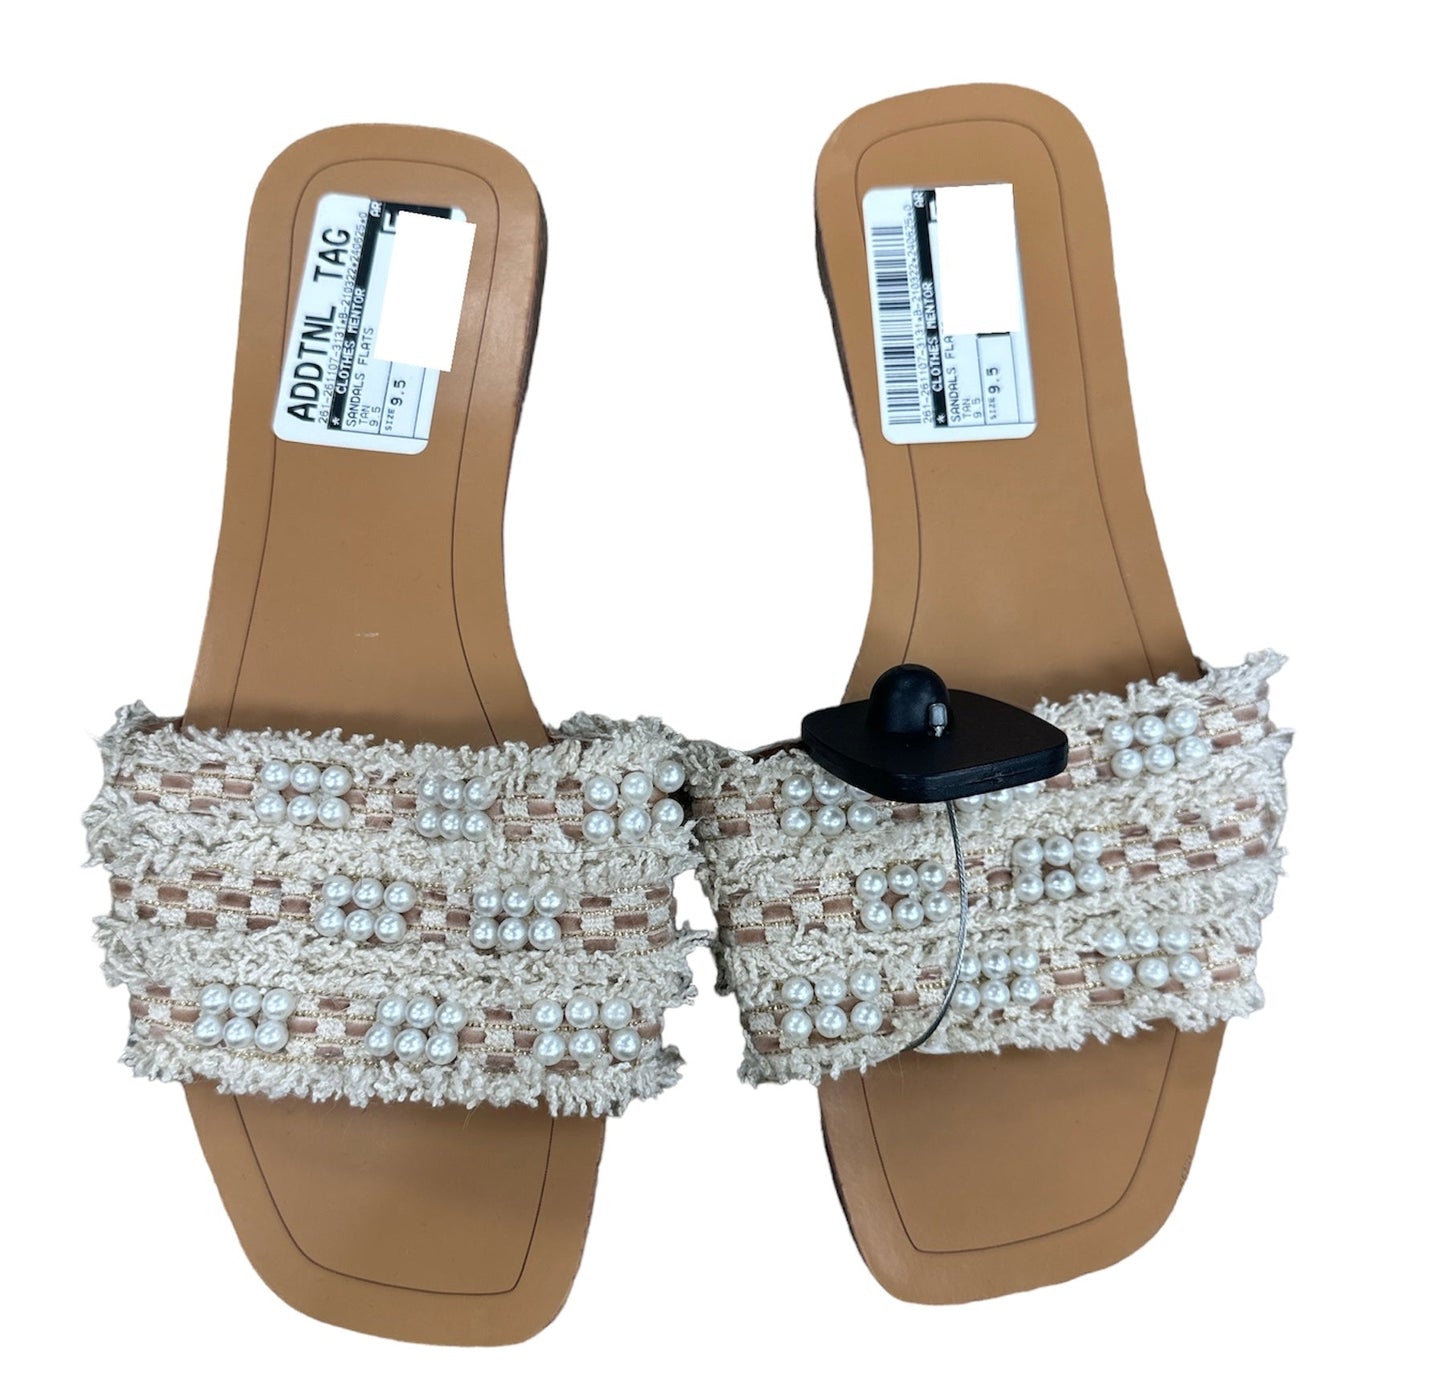 Tan Sandals Flats Clothes Mentor, Size 9.5